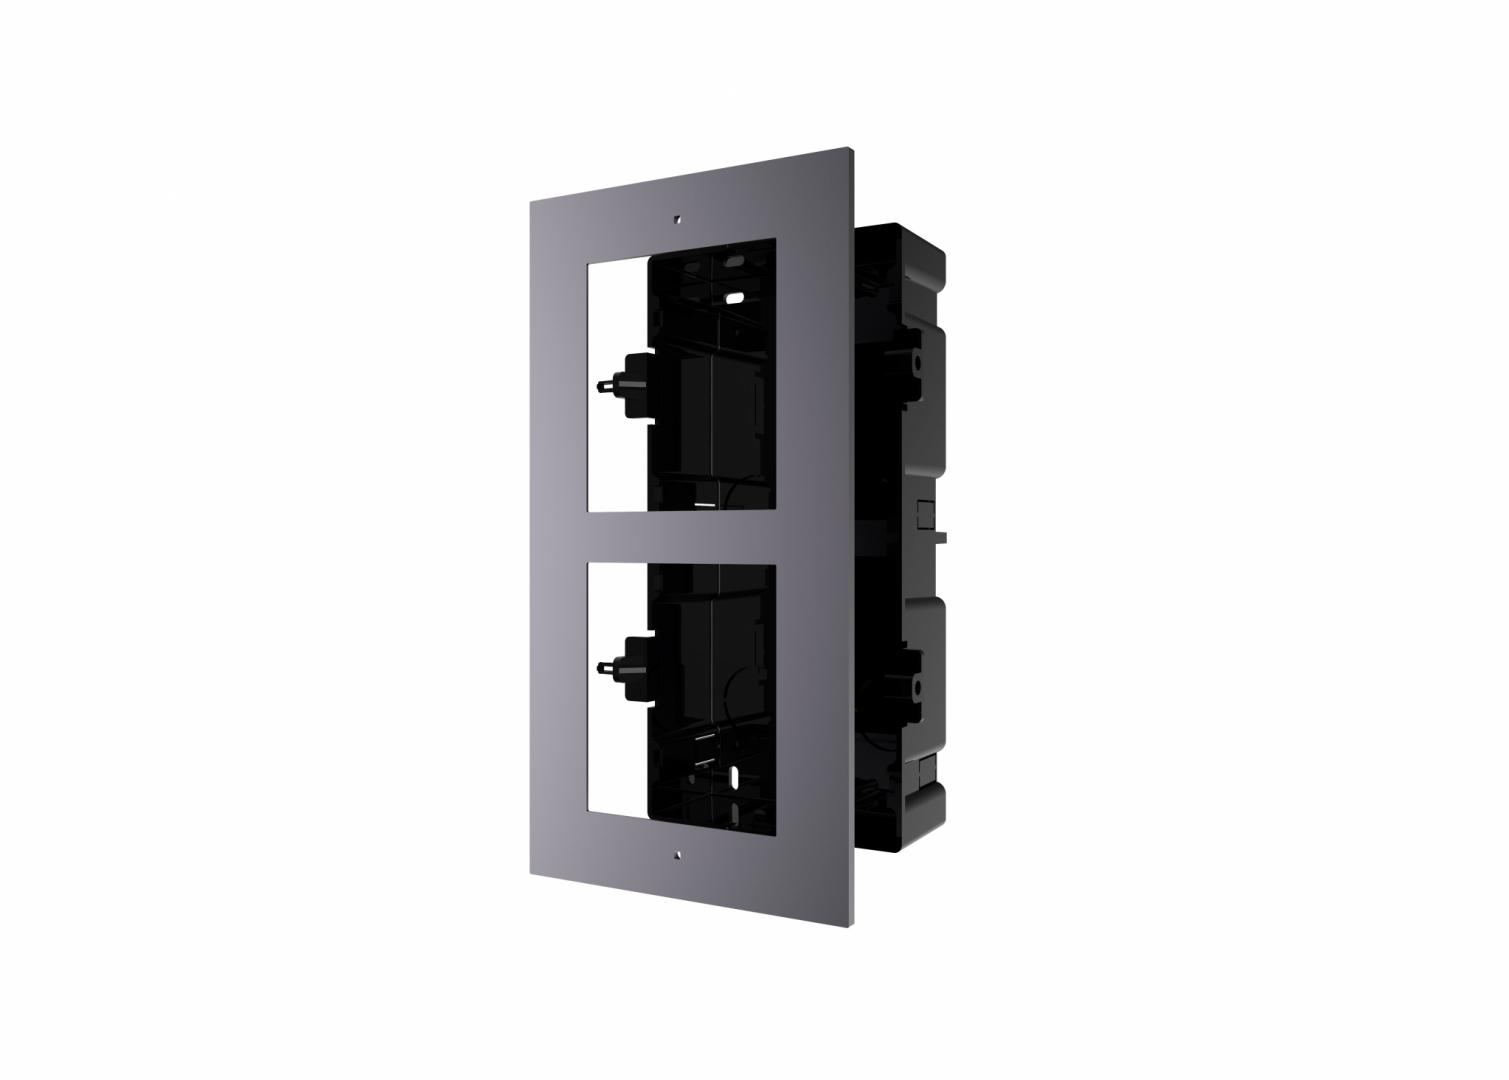 Panou frontal pentru 2 module de videointerfon modular Hikvision DS-KD- ACF2; permite conectarea a 2 module de interfon modular; montare incastrata; material aluminiu; doza de plastic inclusa; dimensiuni:236mm x 124mm × 4mm;